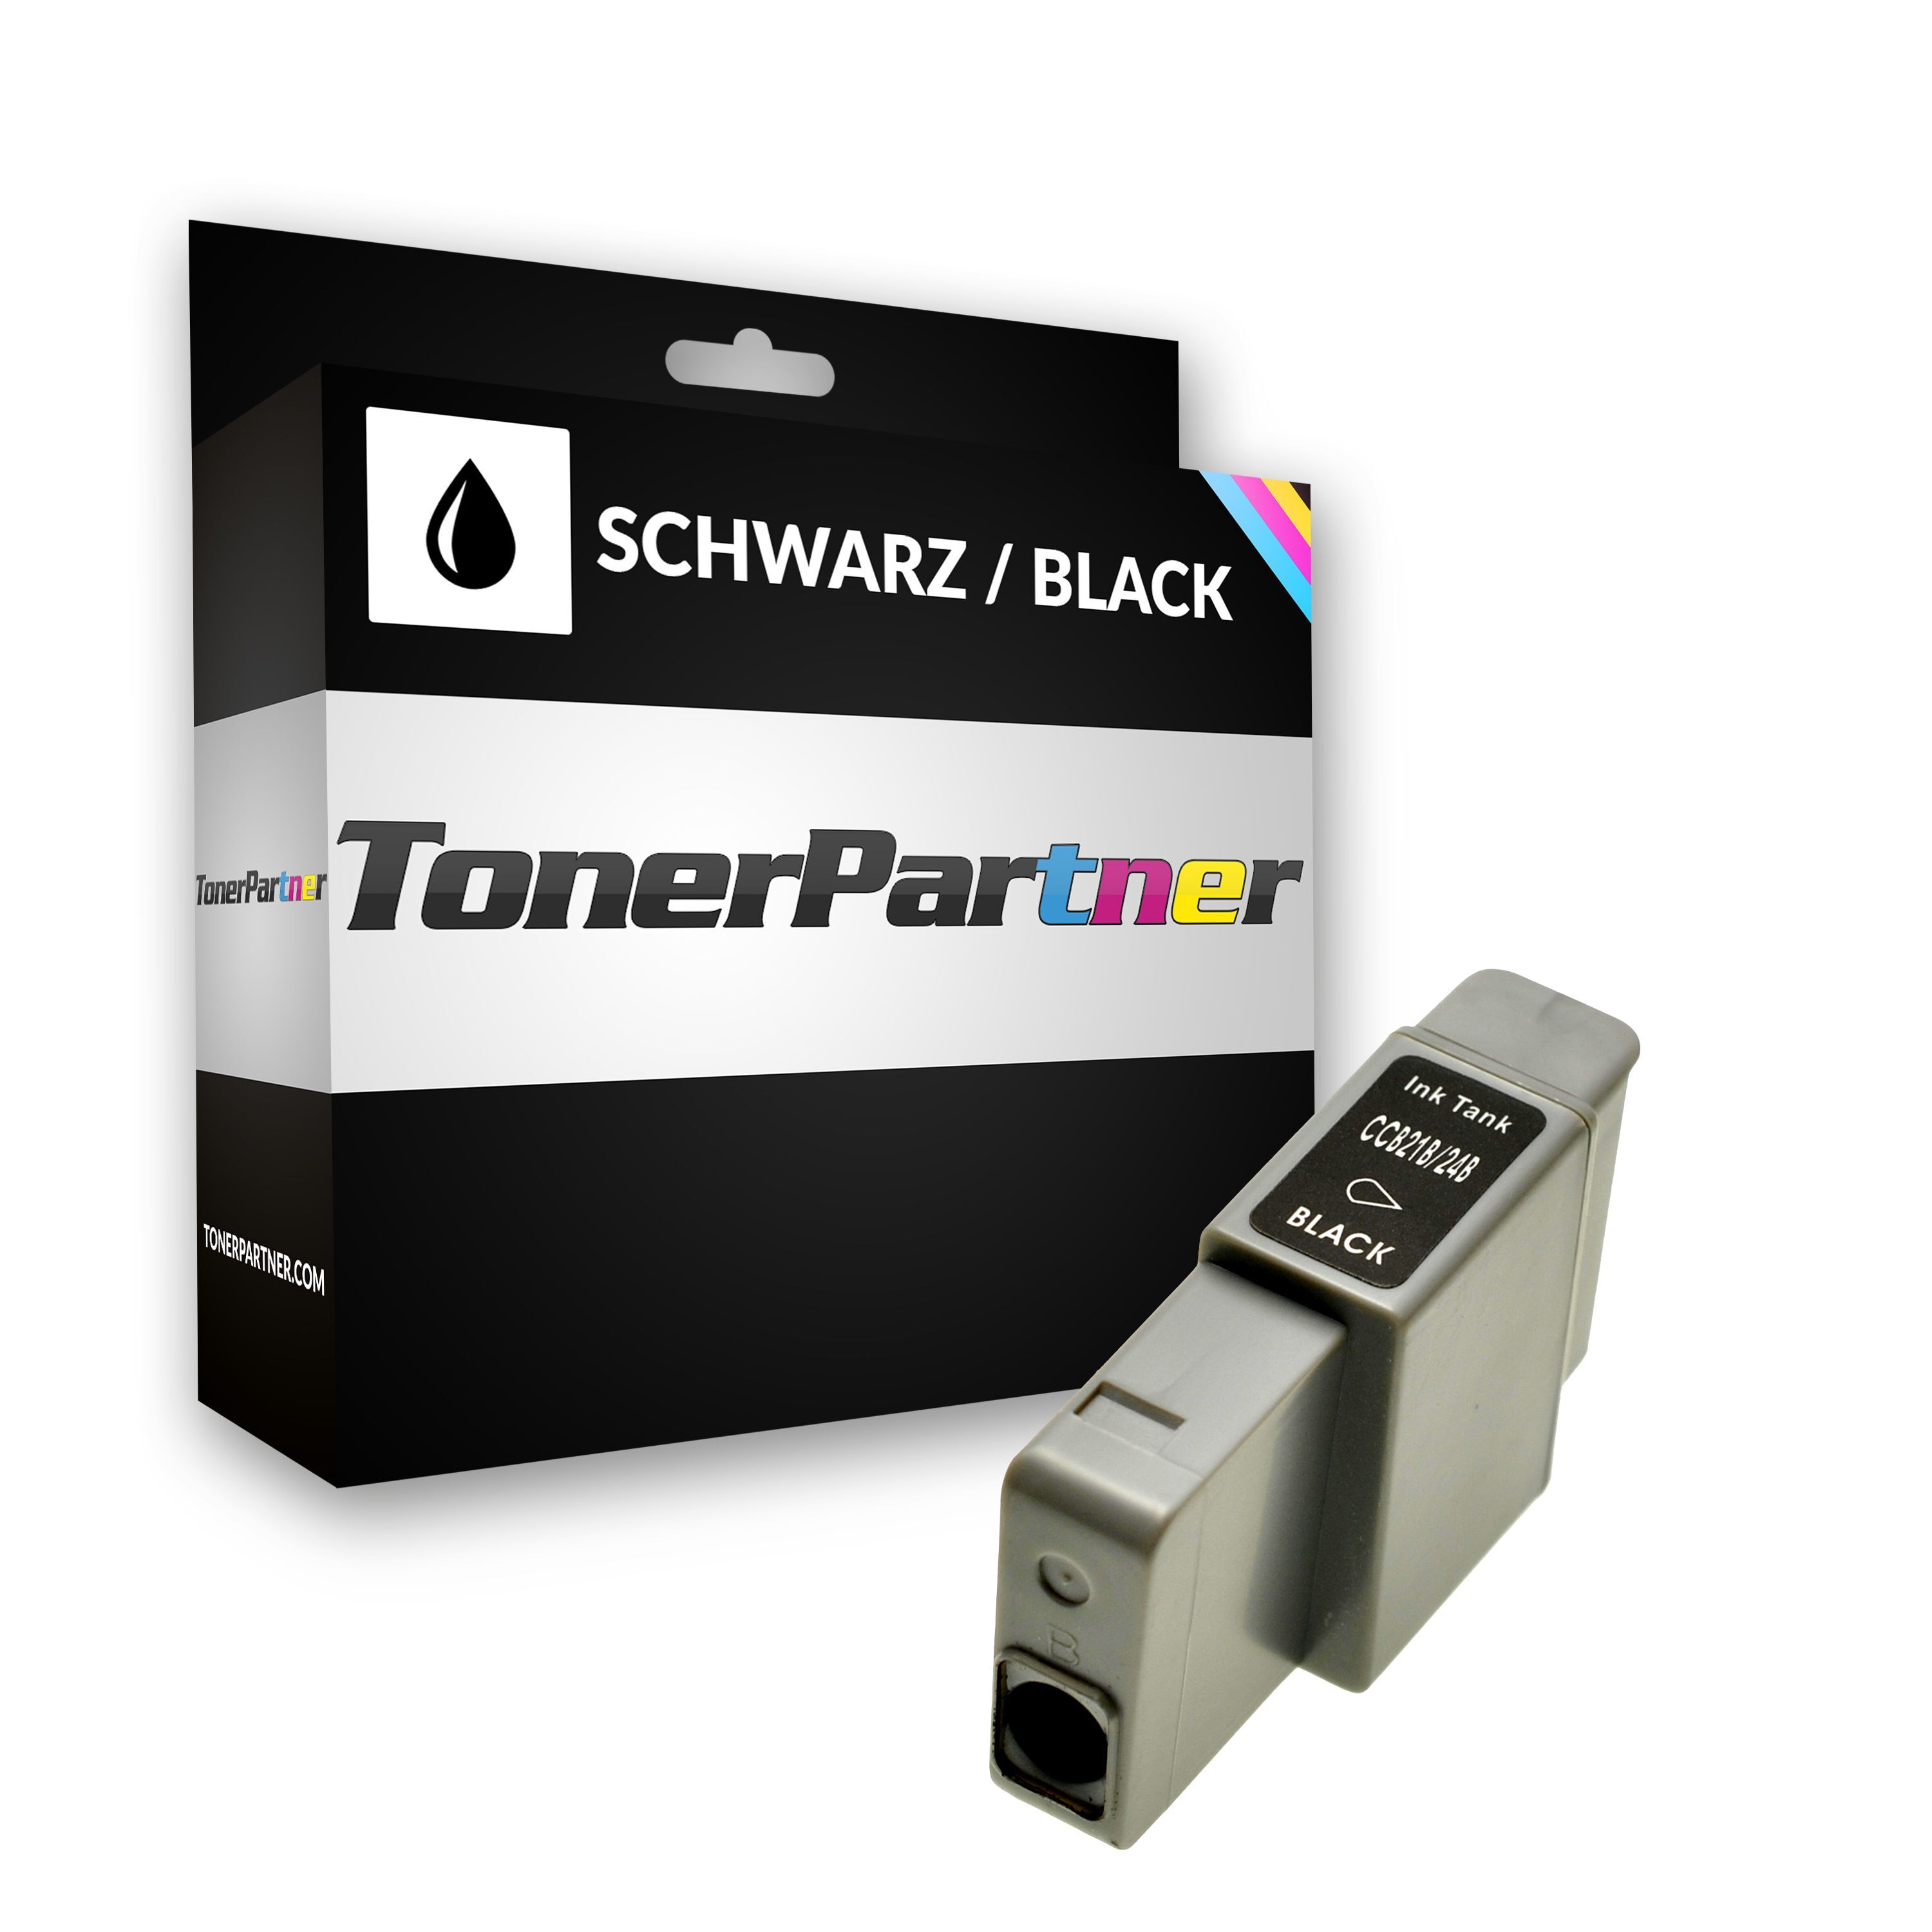 TonerPartner Kompatibel zu Canon I 320 Tintenpatrone (BCI-24 BK / 6881 A 002) schwarz, 240 Seiten, 1,44 Rp pro Seite, Inhalt: 9 ml von TonerPartner